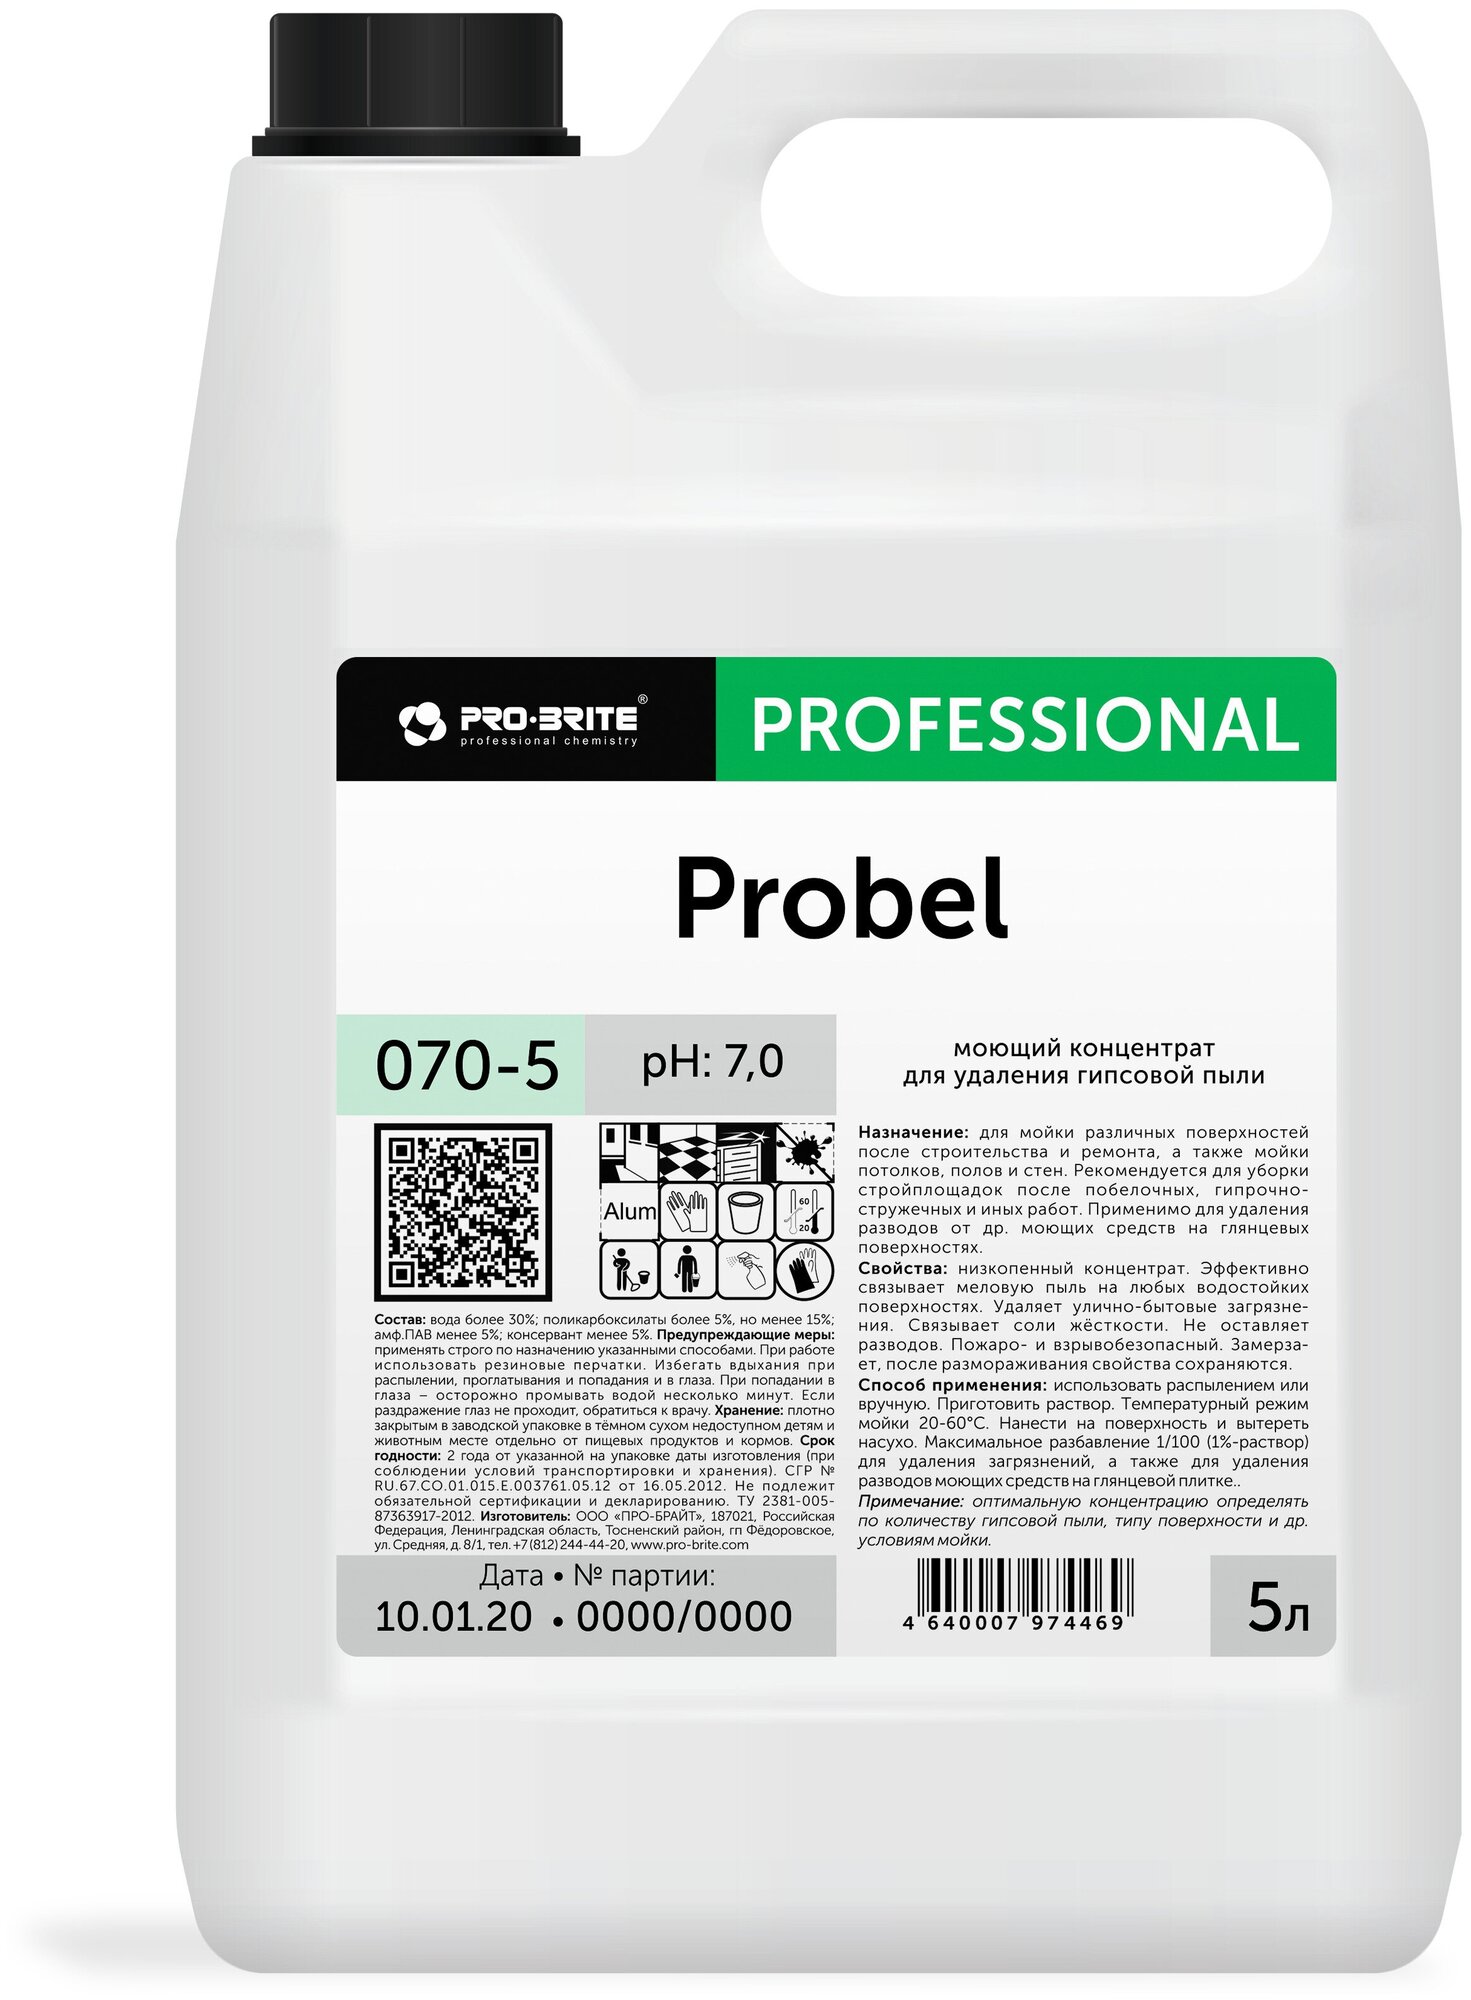 Моющий концентрат для удаления гипсовой пыли PRO-BRITE Probel (5 л)